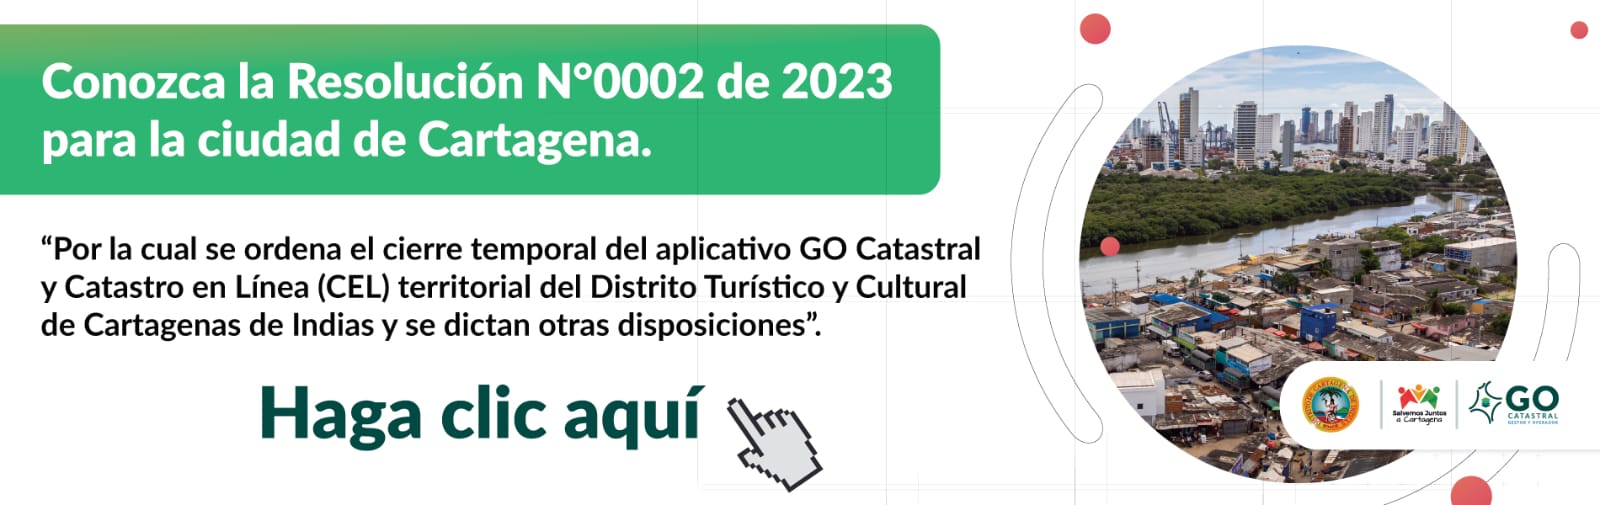 Conozca la Resolución N°0002 de 2023 para la ciudad de Cartagena